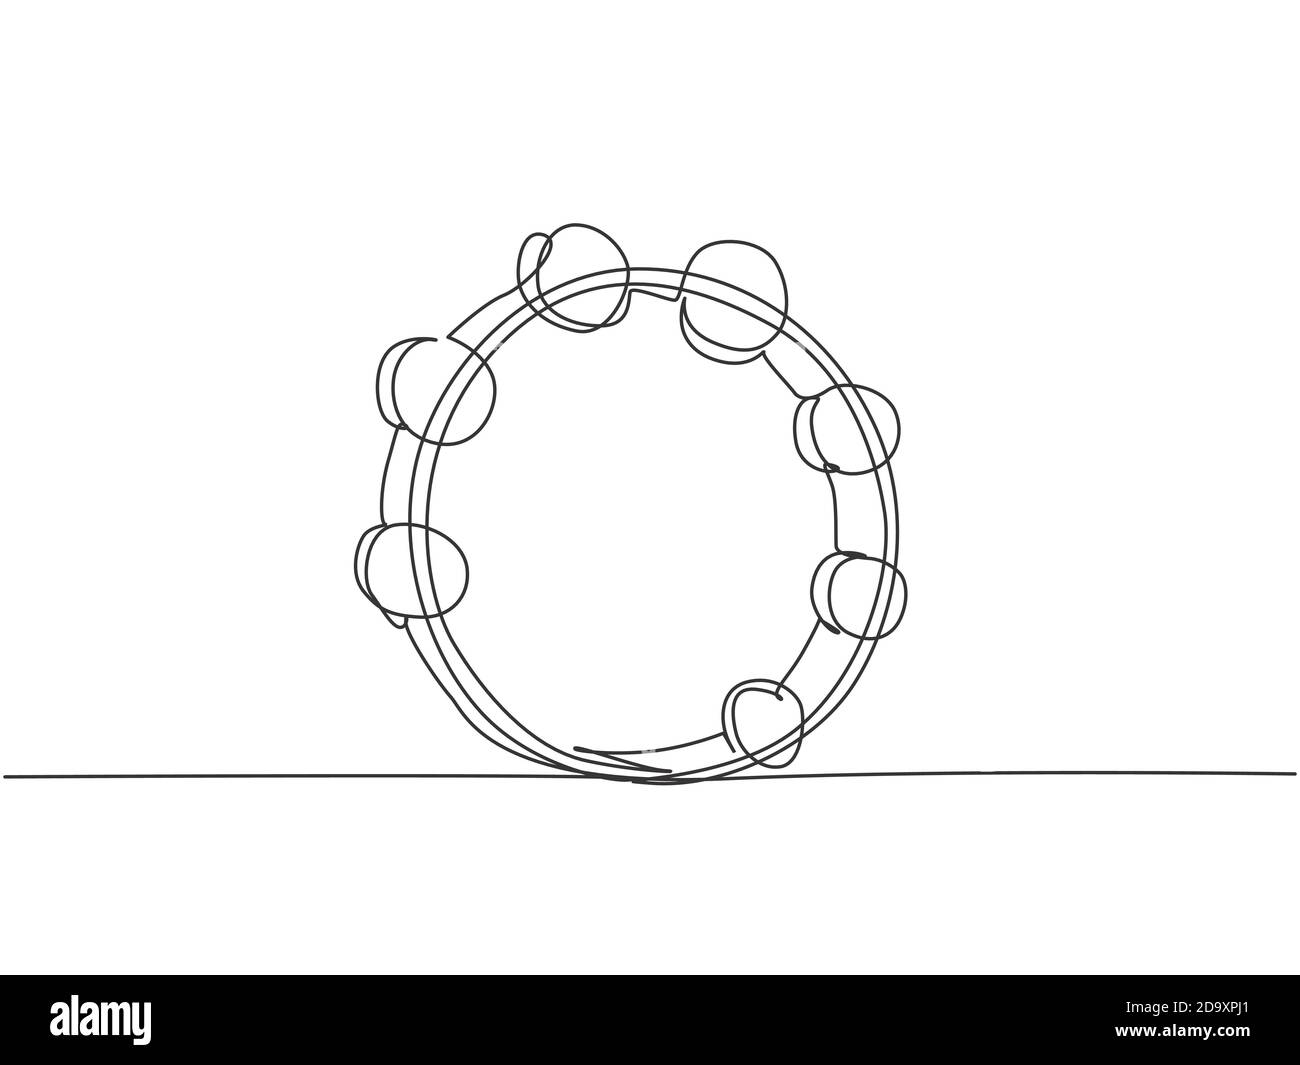 Un dessin de ligne continu de tambourine à cercle rond. Concept d'instruments de musique à percussion dynamique dessin d'une seule ligne graphique vecteur de conception Illustration de Vecteur